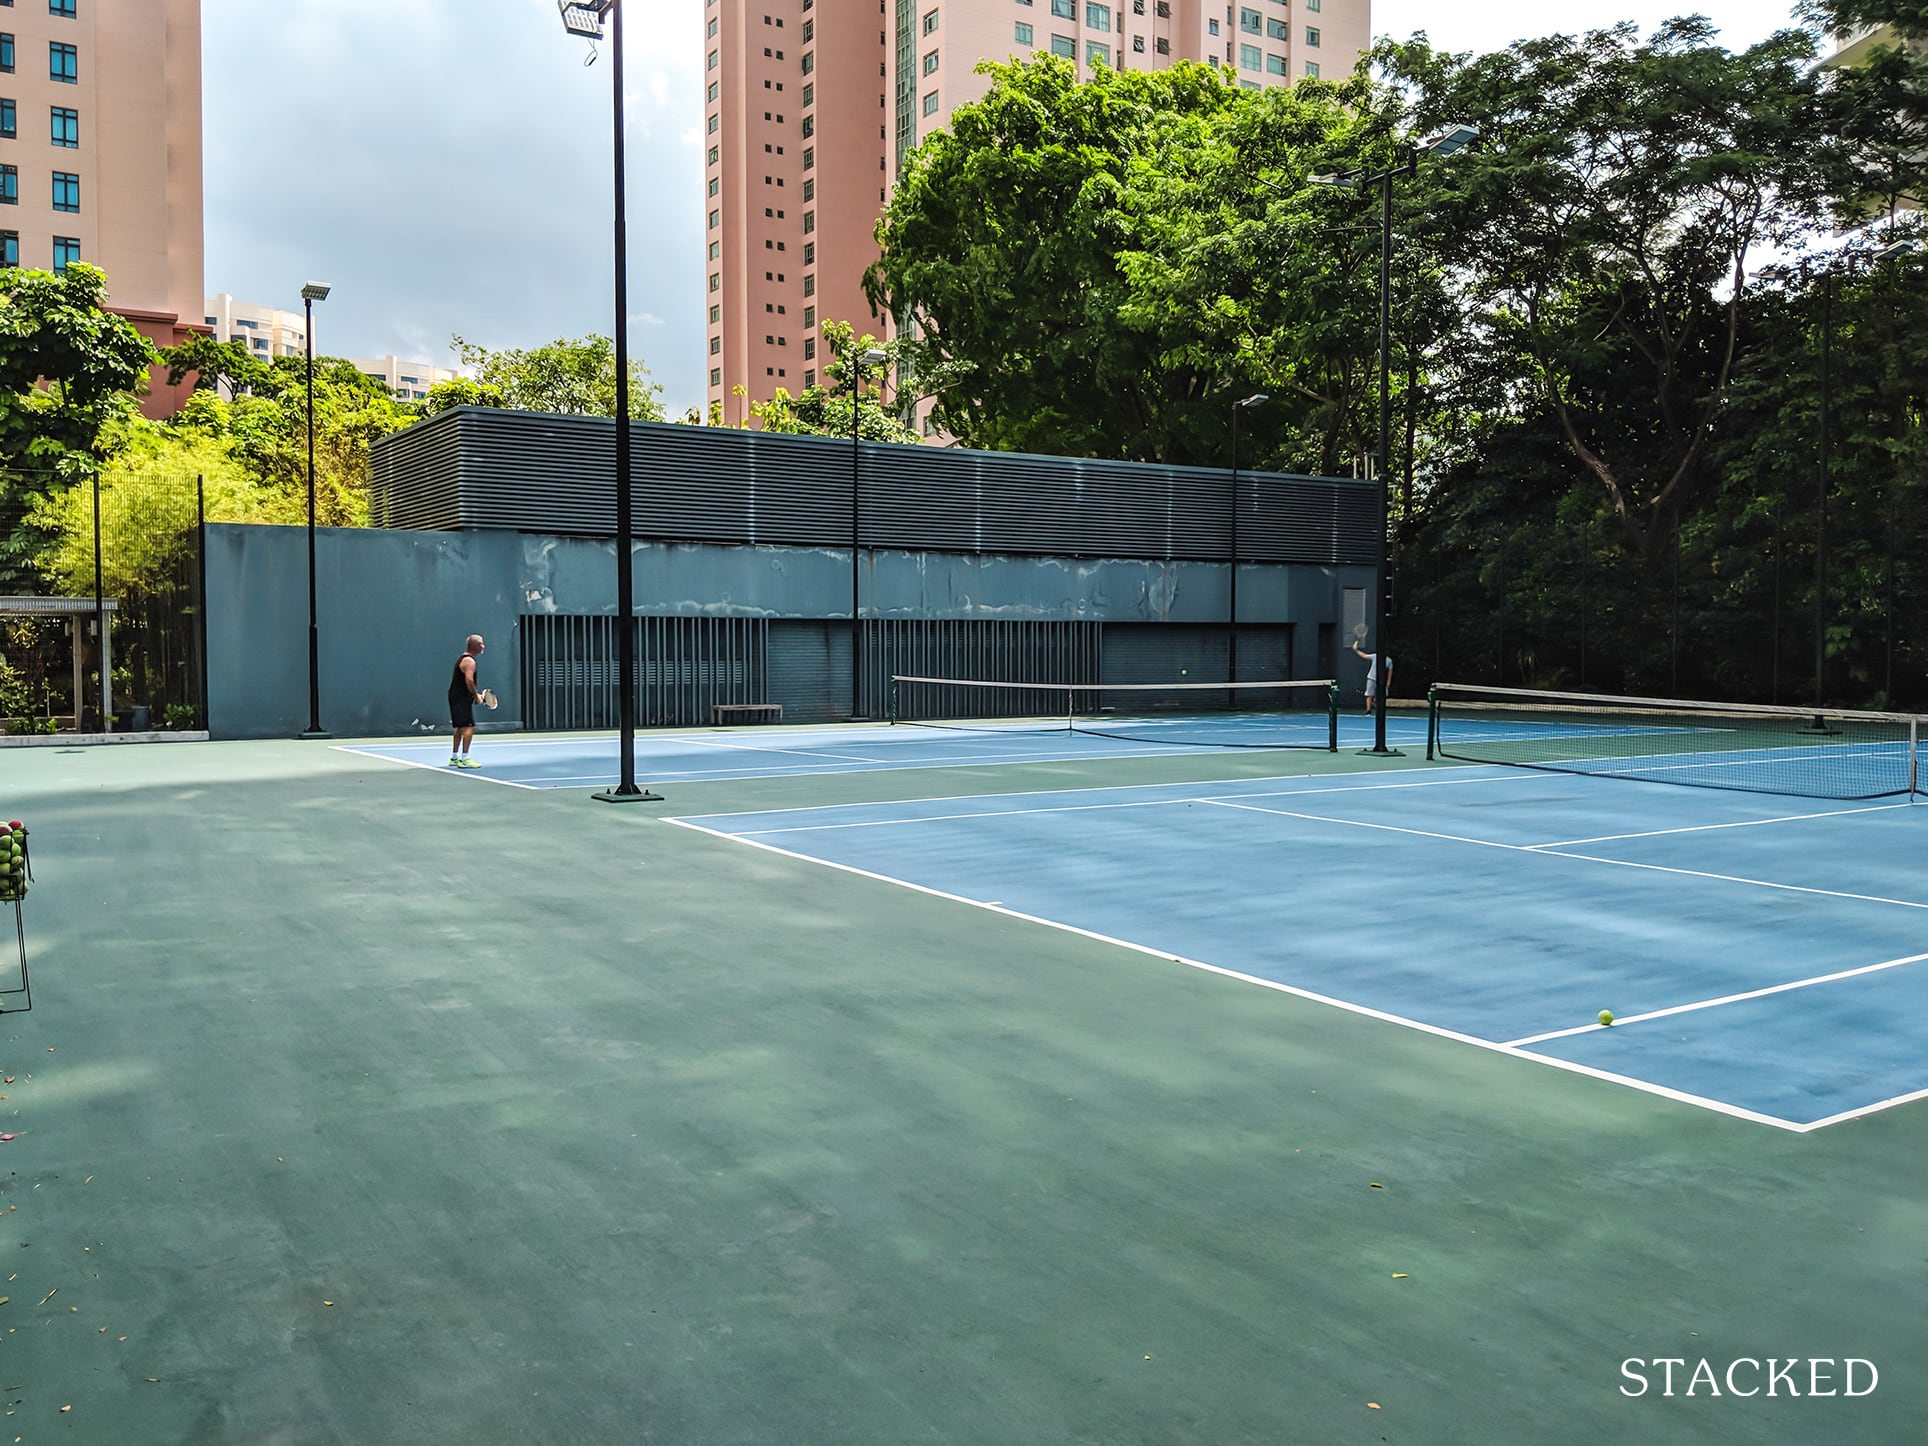 The Trillium tennis courts